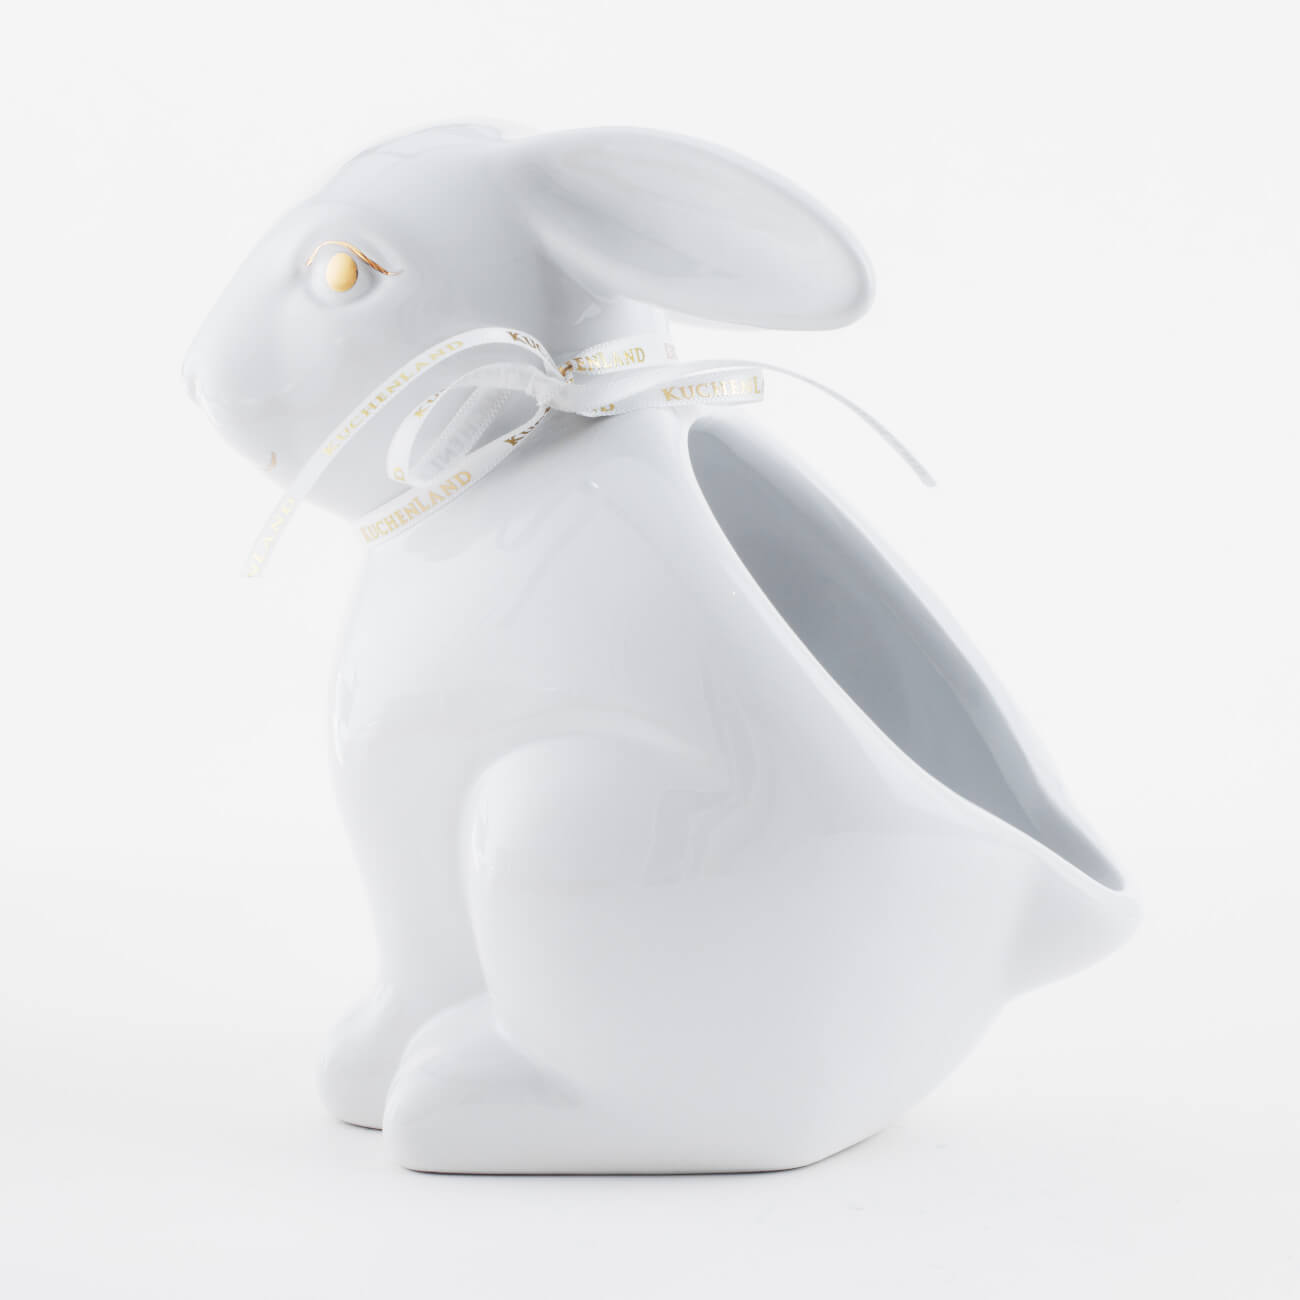 Конфетница, 17х17 см, керамика, белая, Кролик, Easter gold подставка для яйца 10 см керамика бело золотистая кролик со скорлупкой easter gold